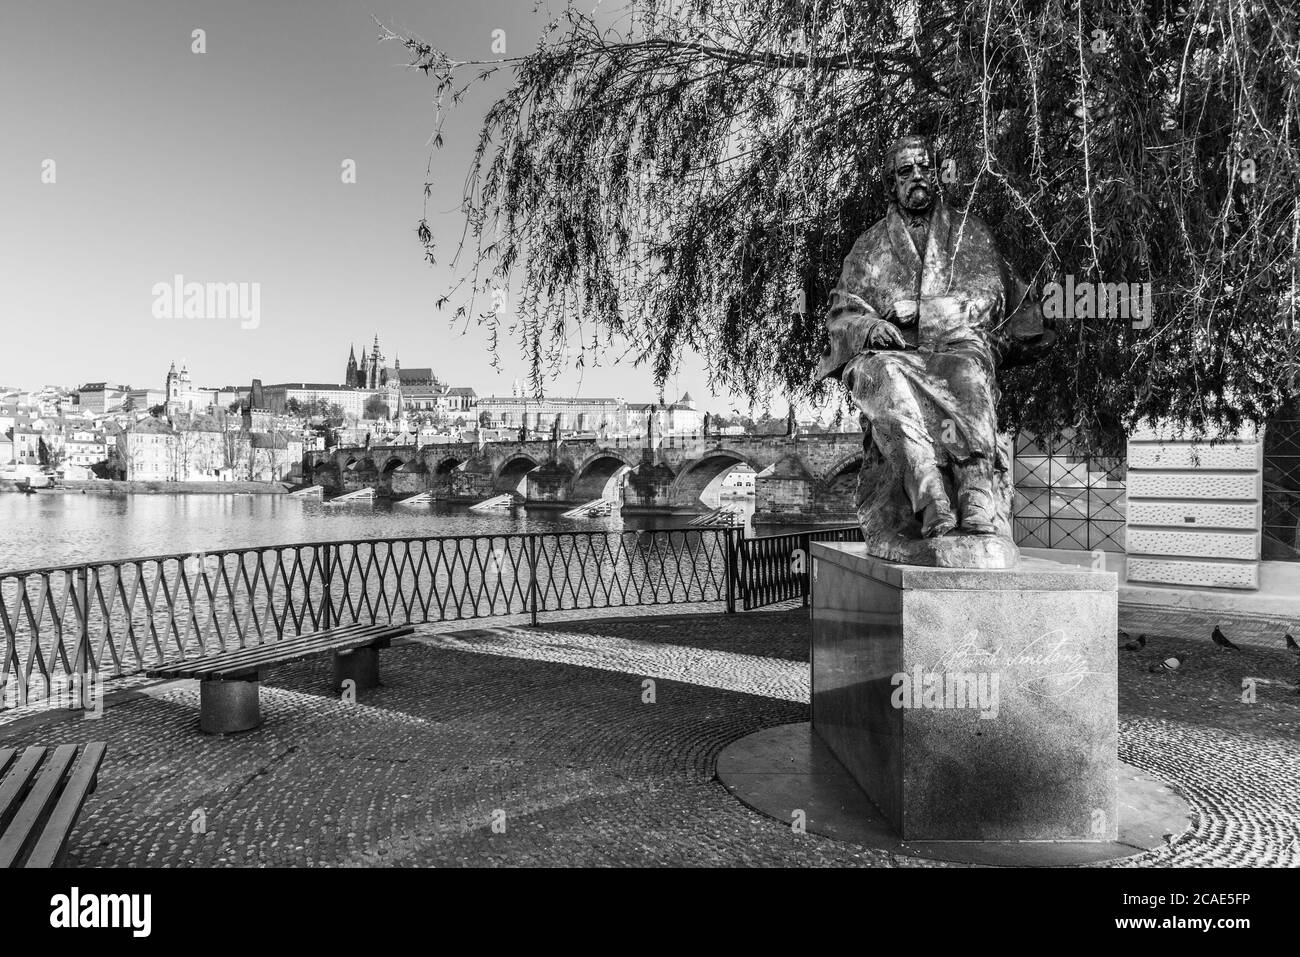 Statue de Bedrich Smetana, compositeur tchèque, au pont de pied de Novotny. Avec vue panoramique sur la Vltava, le pont Charles et le château de Prague en arrière-plan. Praha, République tchèque. Image en noir et blanc. Banque D'Images